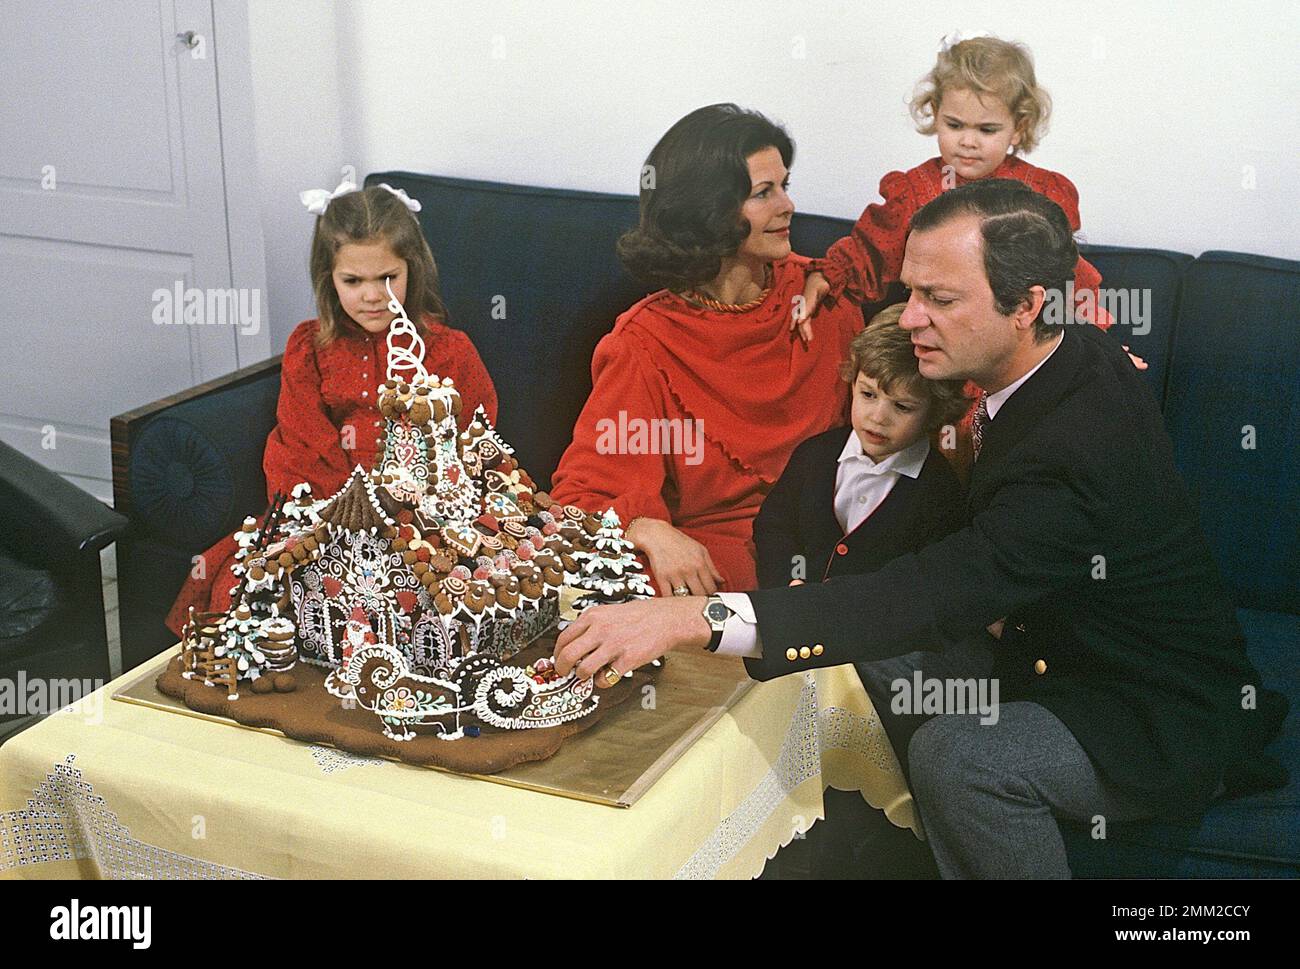 Carl XVI Gustaf, re di Svezia. Nato il 30 aprile 1946. Il re Carl XVI Gustaf, la regina Silvia i loro figli, la principessa Madeleine, la principessa corona Victoria, il principe Carl Philip, durante la sessione fotografica annuale di natale, quest'anno 1984 con una casa di pan di zenzero come decorazione. Foto Stock